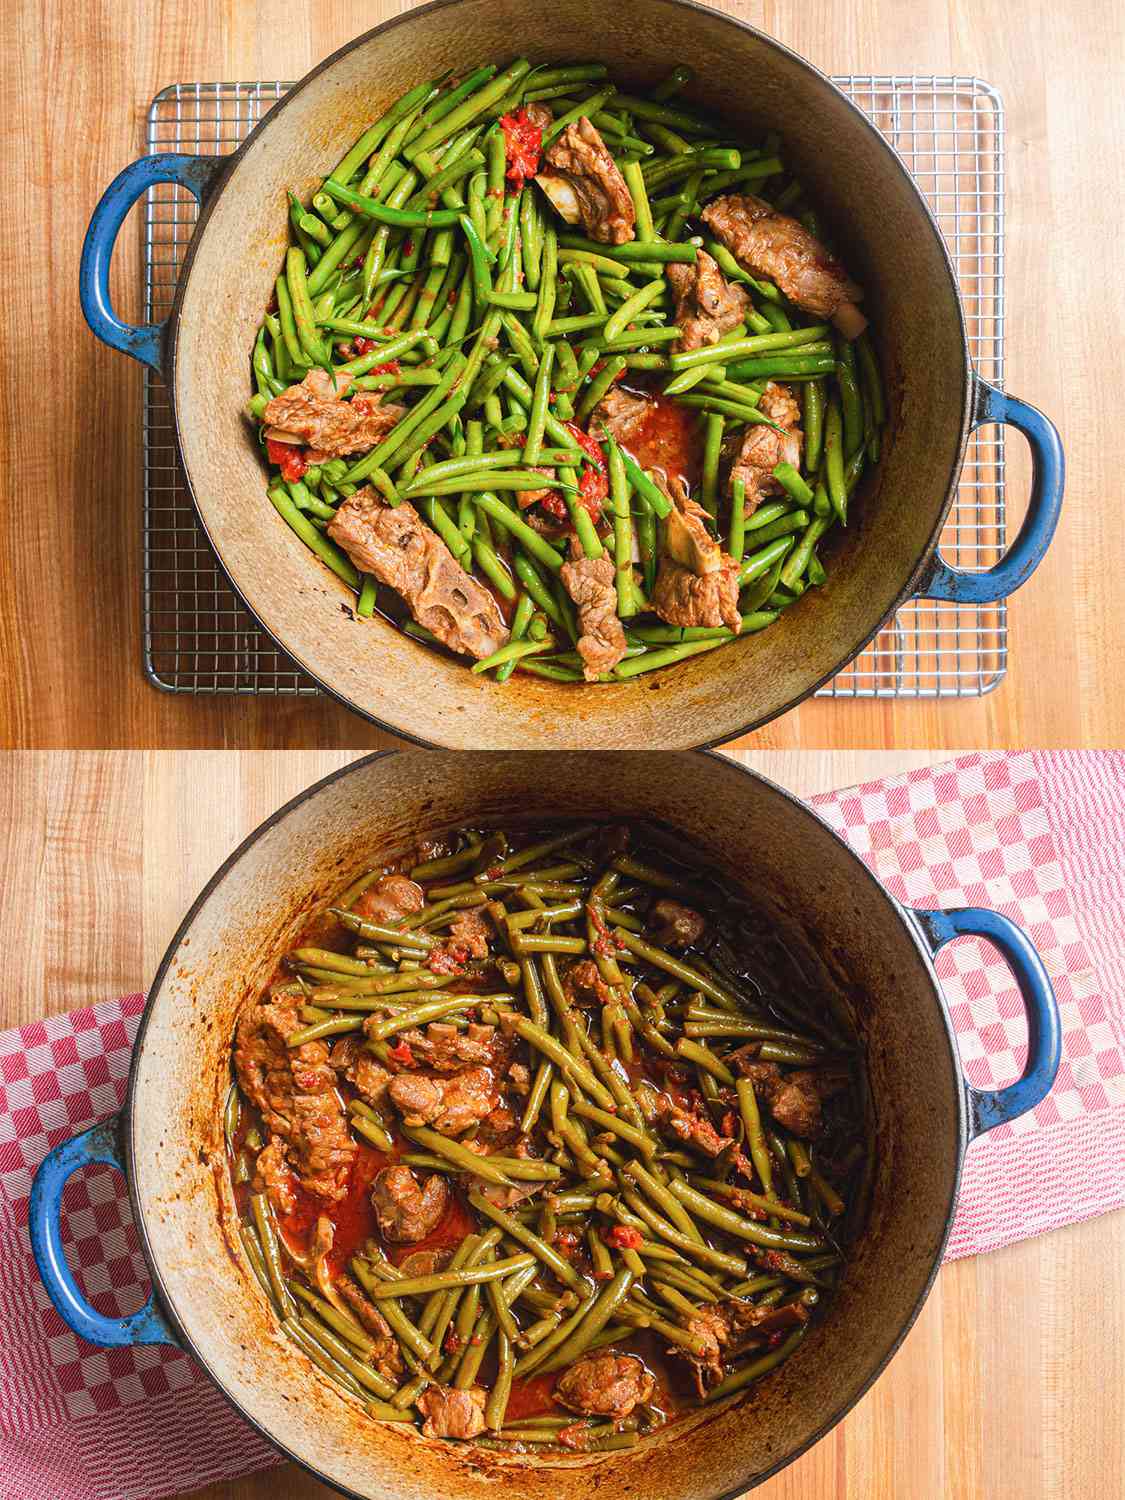 两个图像拼贴。上图:加入荷兰烤箱的青豆。下:荷兰烤箱烤熟的羊肉和四季豆